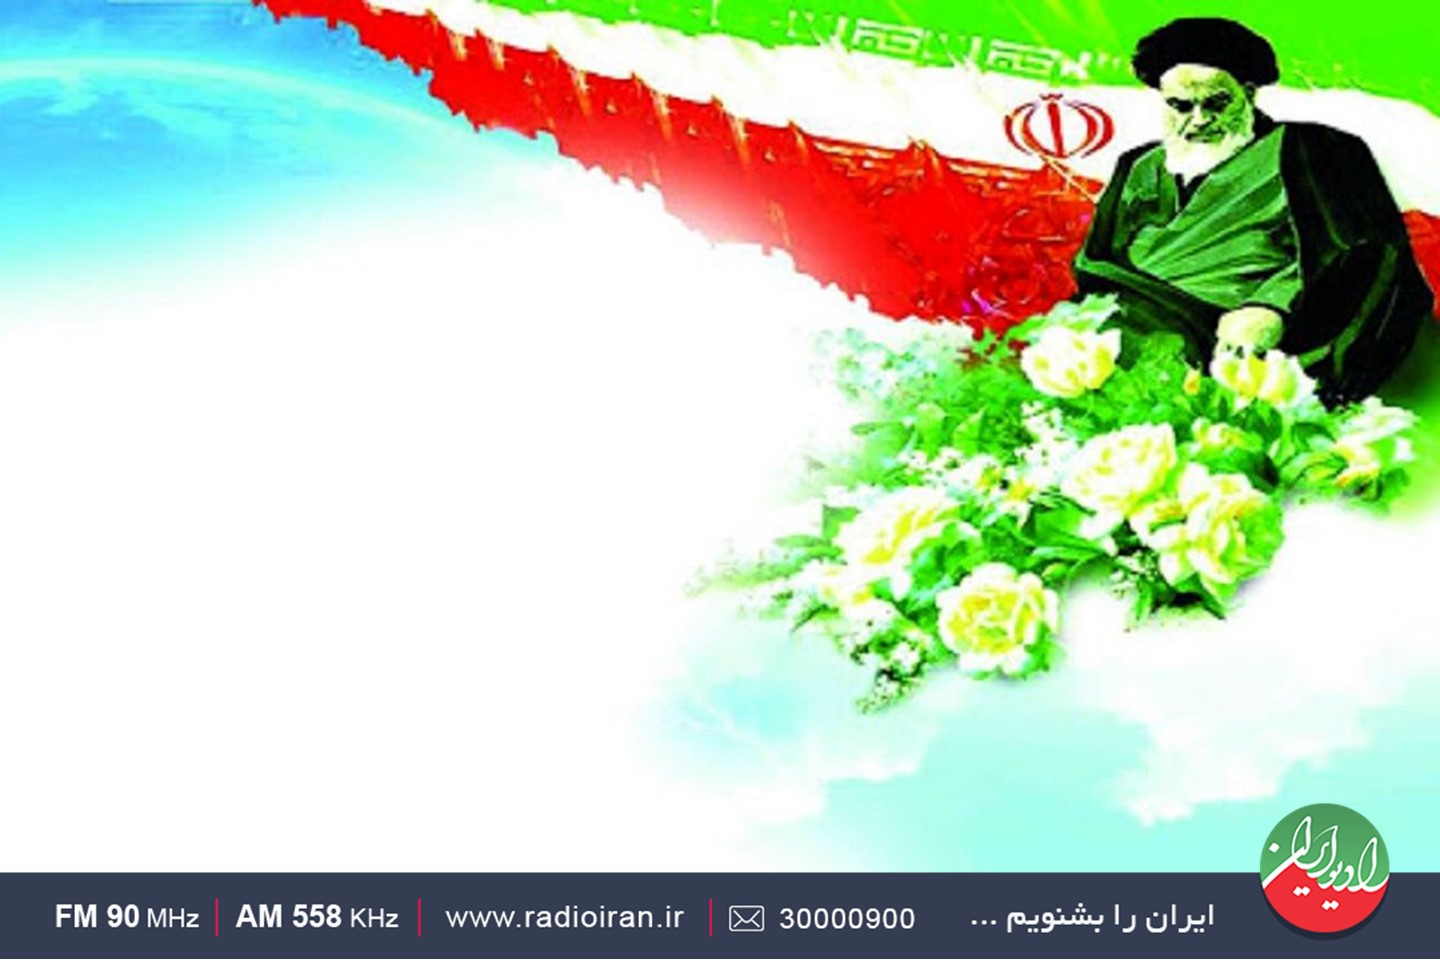 سفر  رادیو ایران به اقصی نقاط کشـور برای دسترسی به دستاوردهای انقلاب